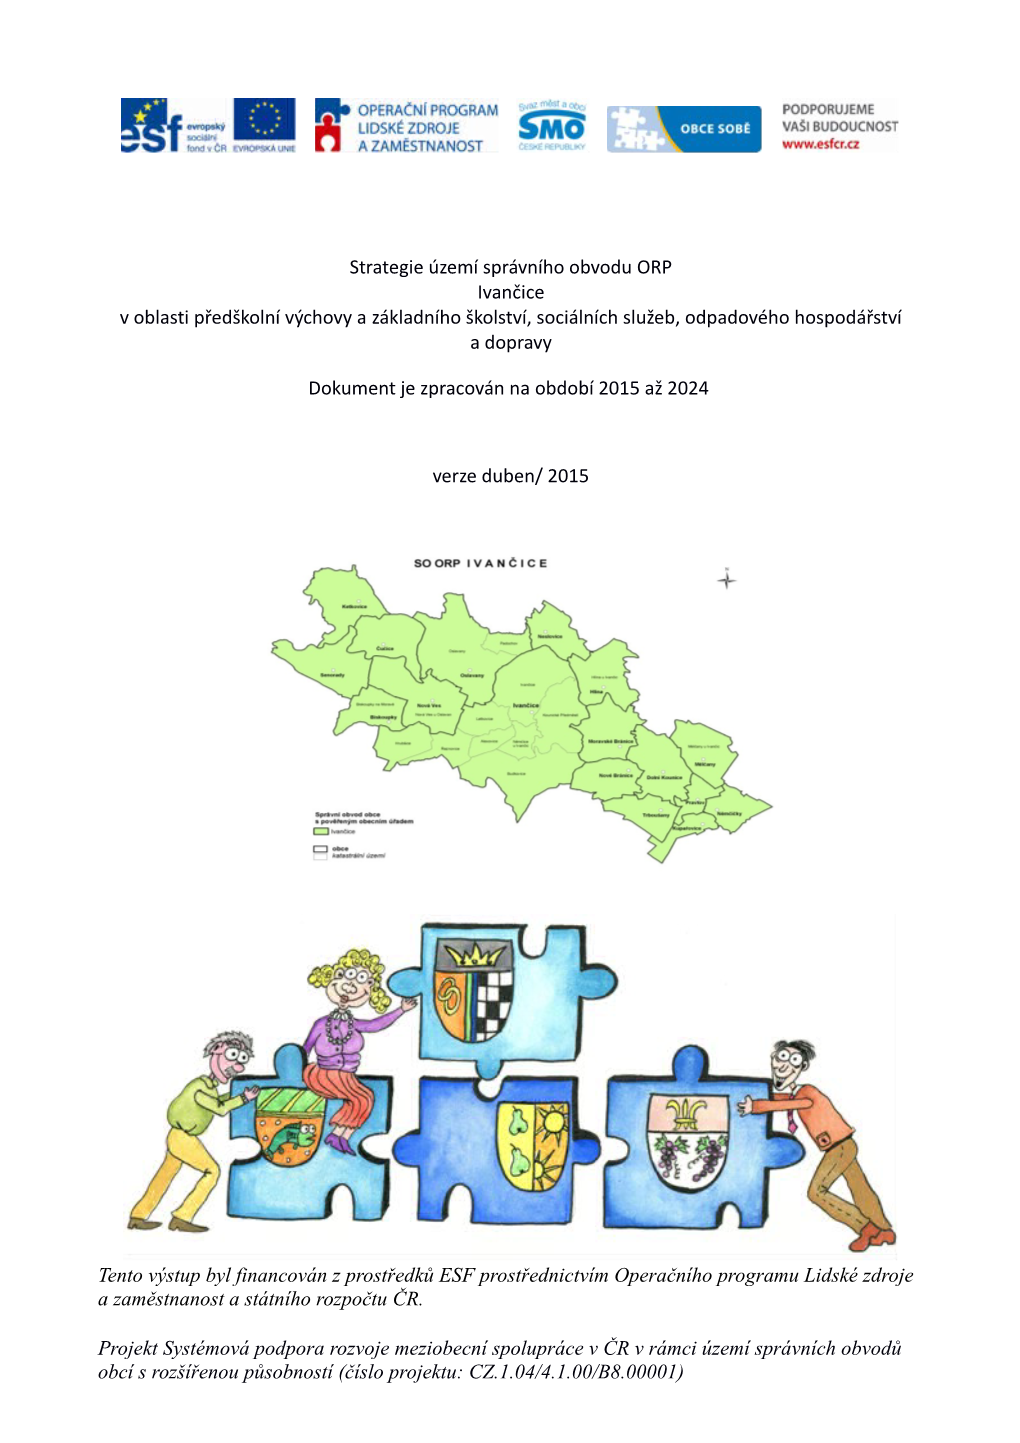 Strategie Území Správního Obvodu ORP Ivančice V Oblasti Předškolní Výchovy a Základního Školství, Sociálních Služeb, Odpadového Hospodářství a Dopravy